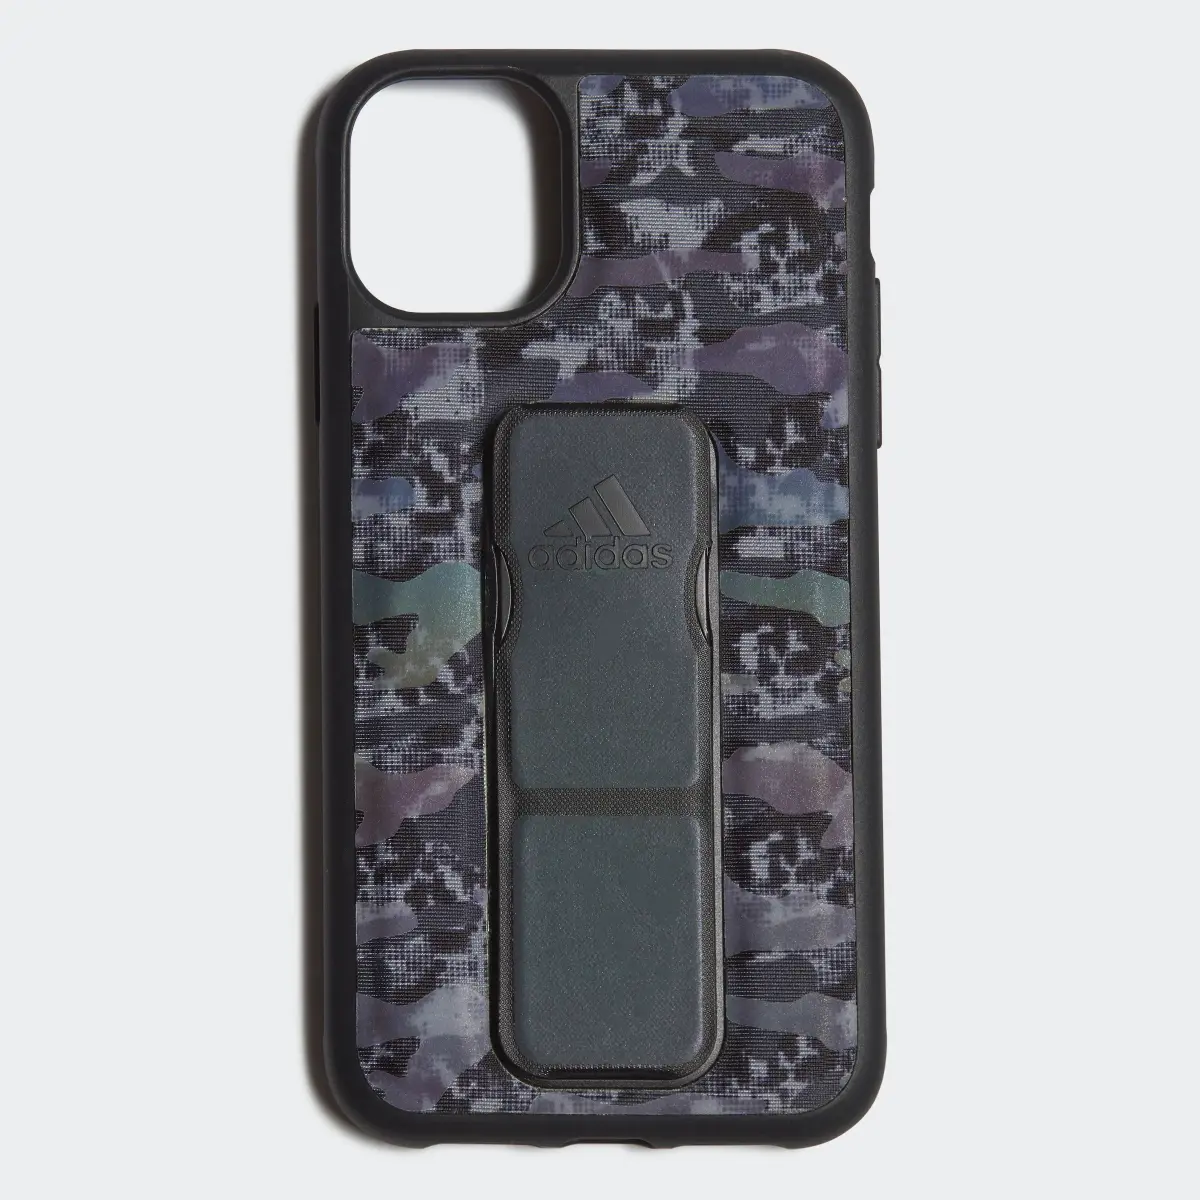 Adidas Grip Case iPhone 11. 1